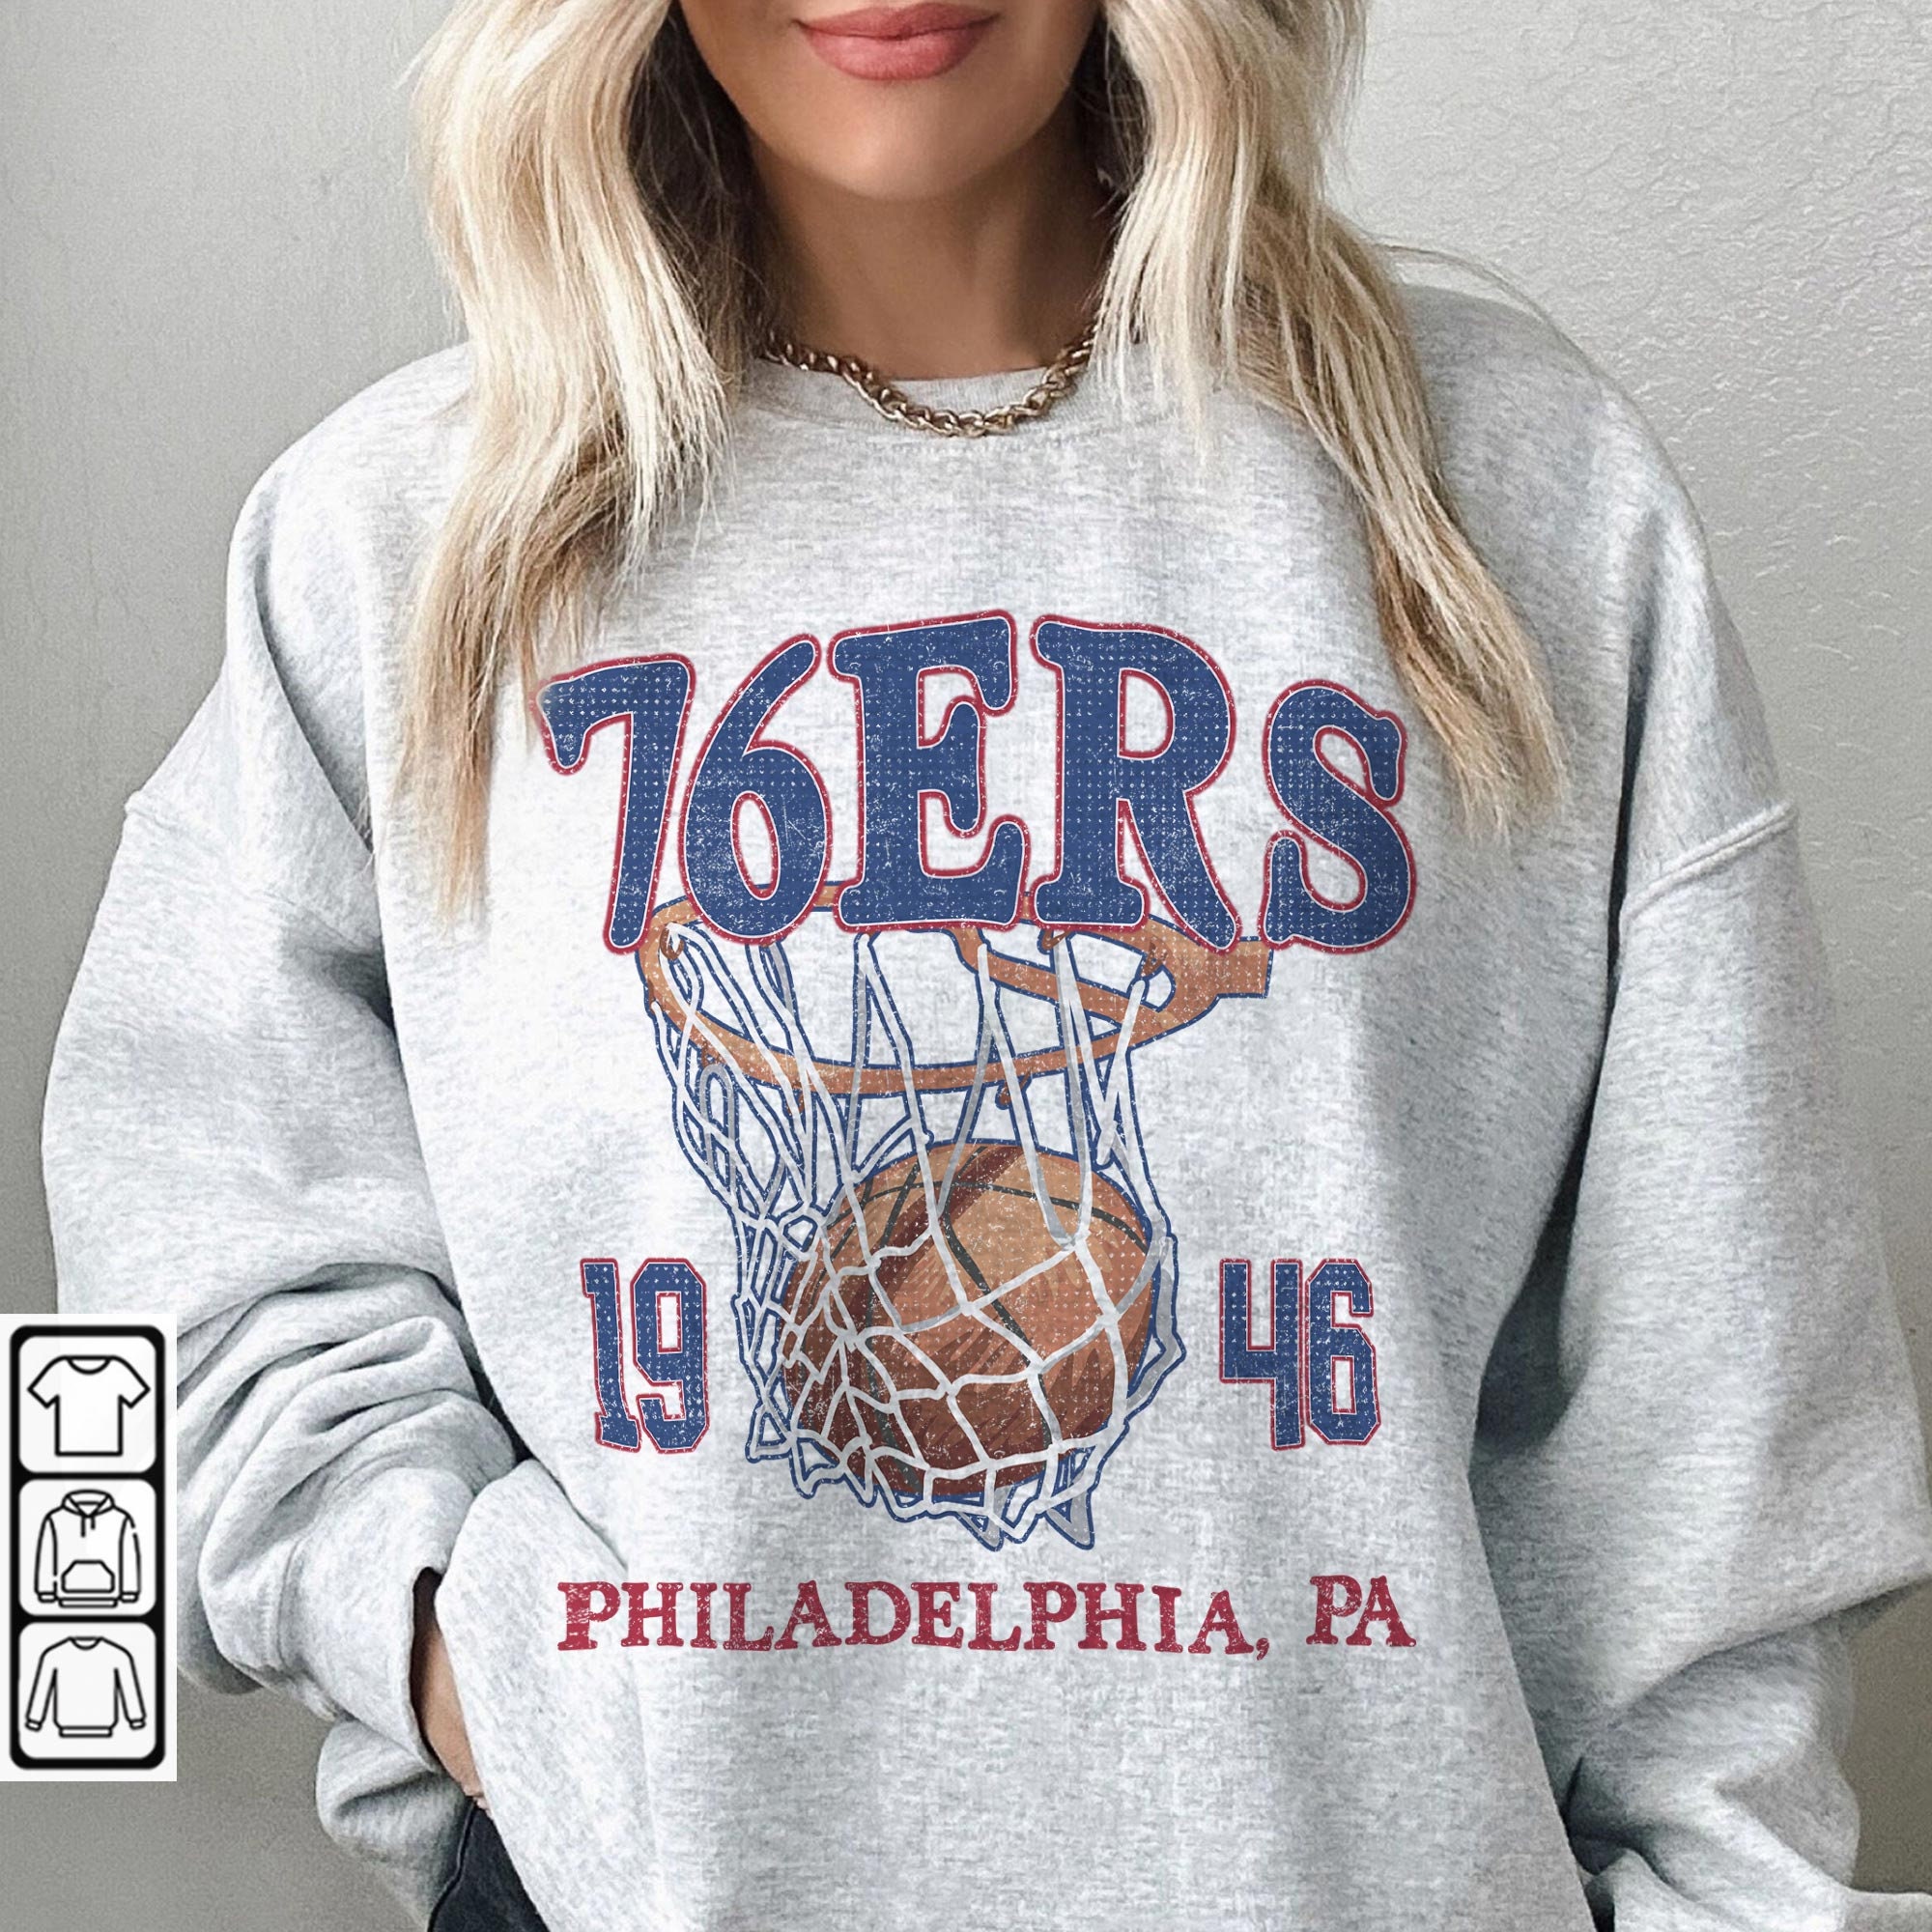 Retro Pullover Sweatshirt – Philadelphia Sixers – 76ers